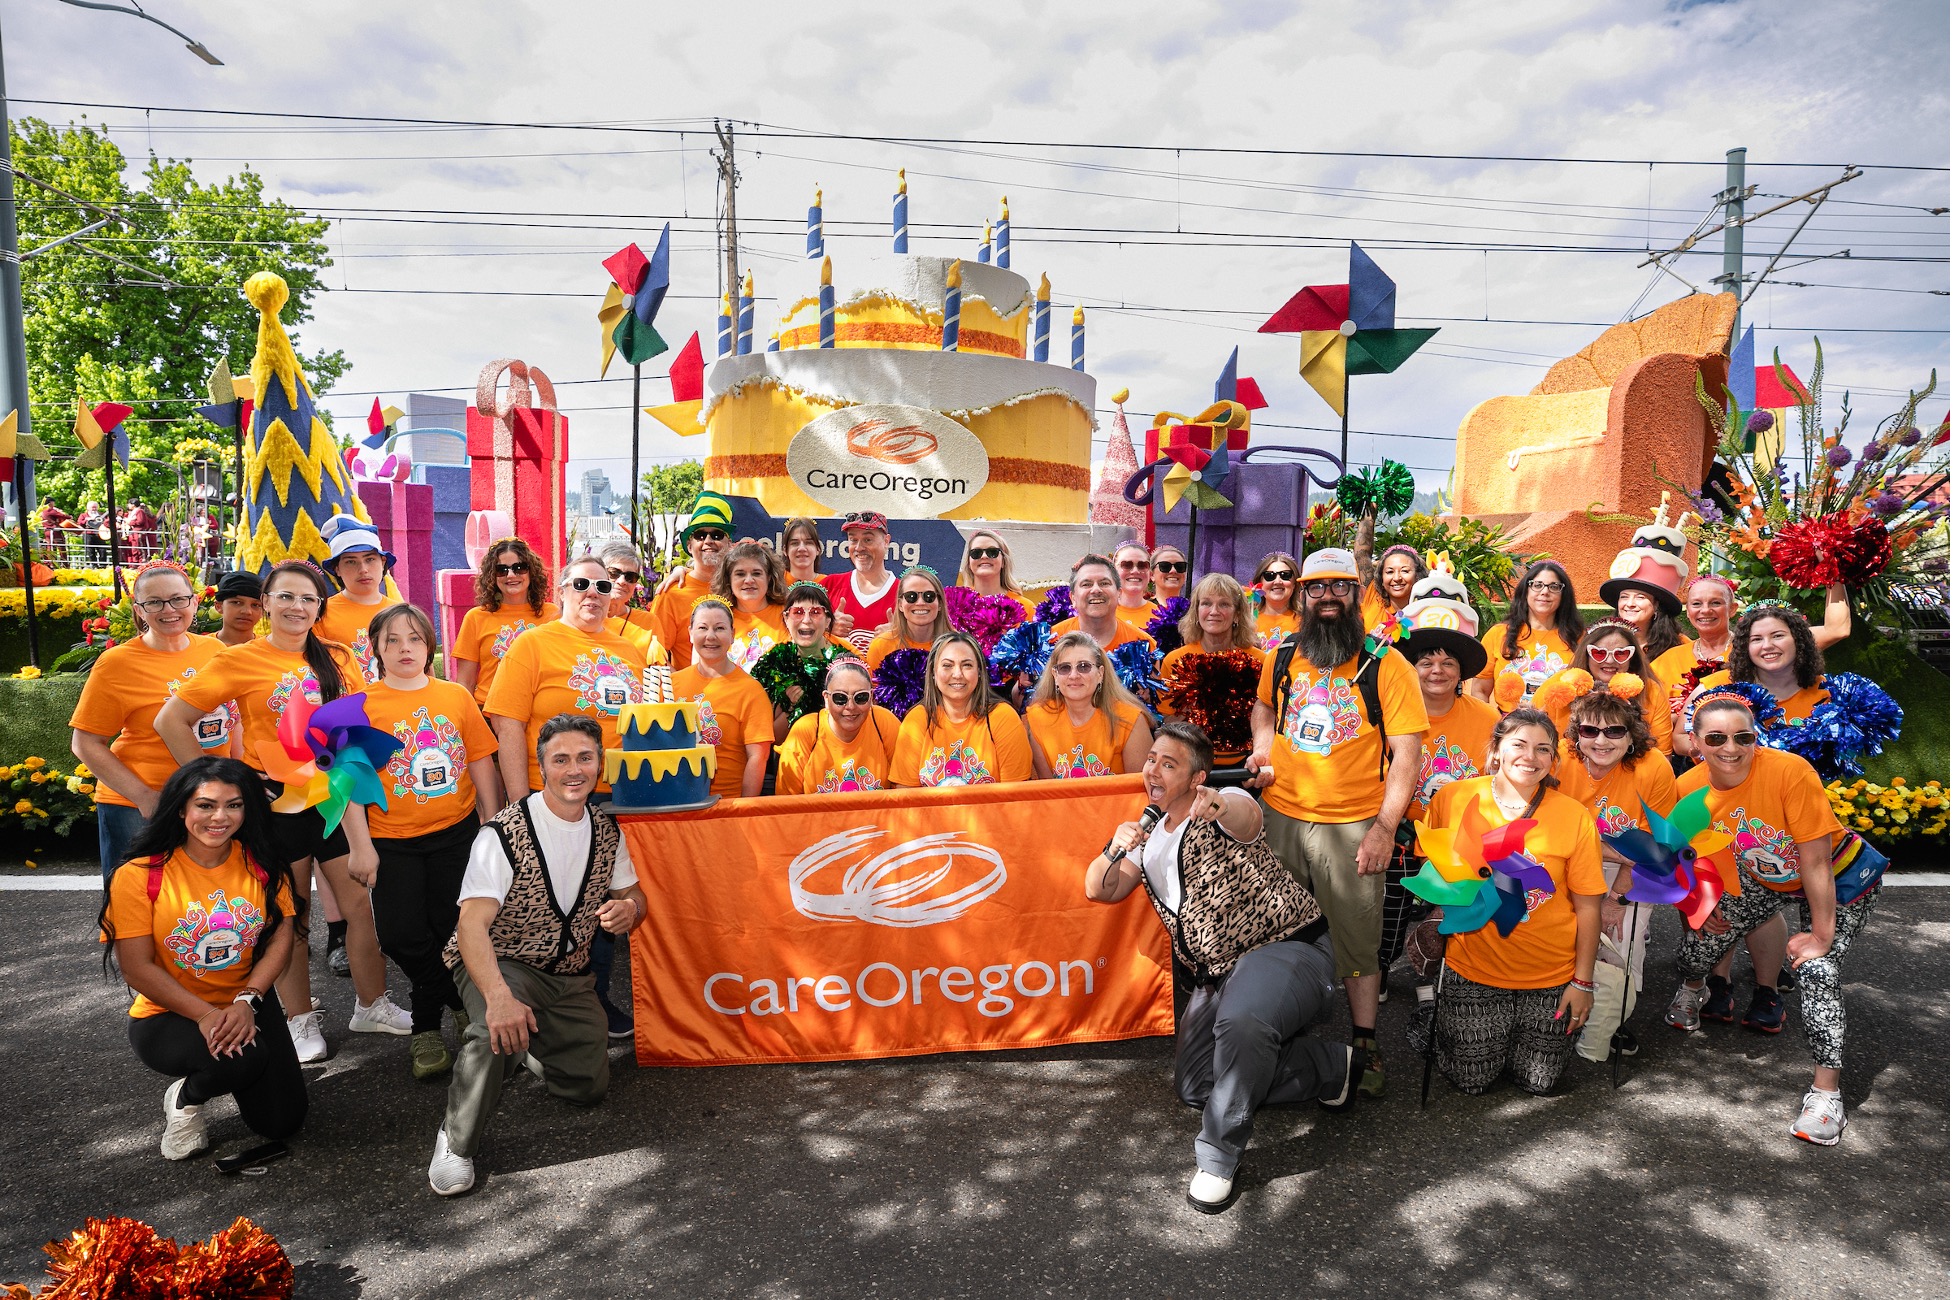 Một nhóm người mặc áo sơ mi CareOregon màu cam đã tập trung trước một chiếc xe diễu hành có một chiếc bánh sinh nhật lớn và tấm biển ghi CarerOregon